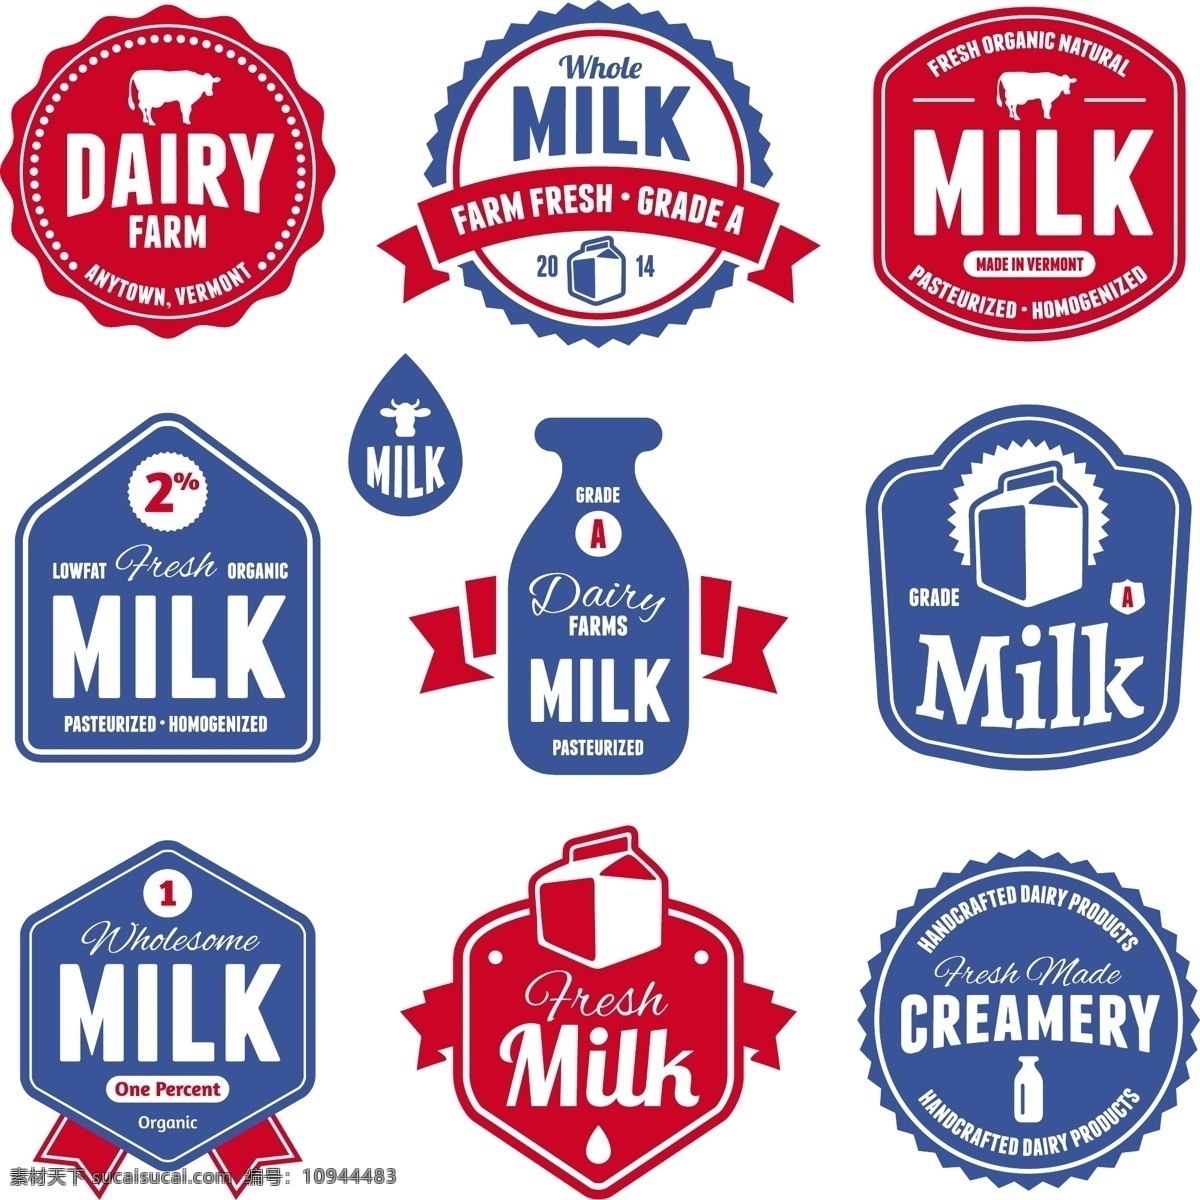 标识标志图标 标志图标 抽象设计 卡通背景 卡通设计 牛奶 牛奶广告 矢量设计 标志 矢量 模板下载 牛奶标志 牛奶设计 牛奶图标 牛奶标签 牛奶商标 牛奶logo 艺术设计 淘宝素材 淘宝促销标签